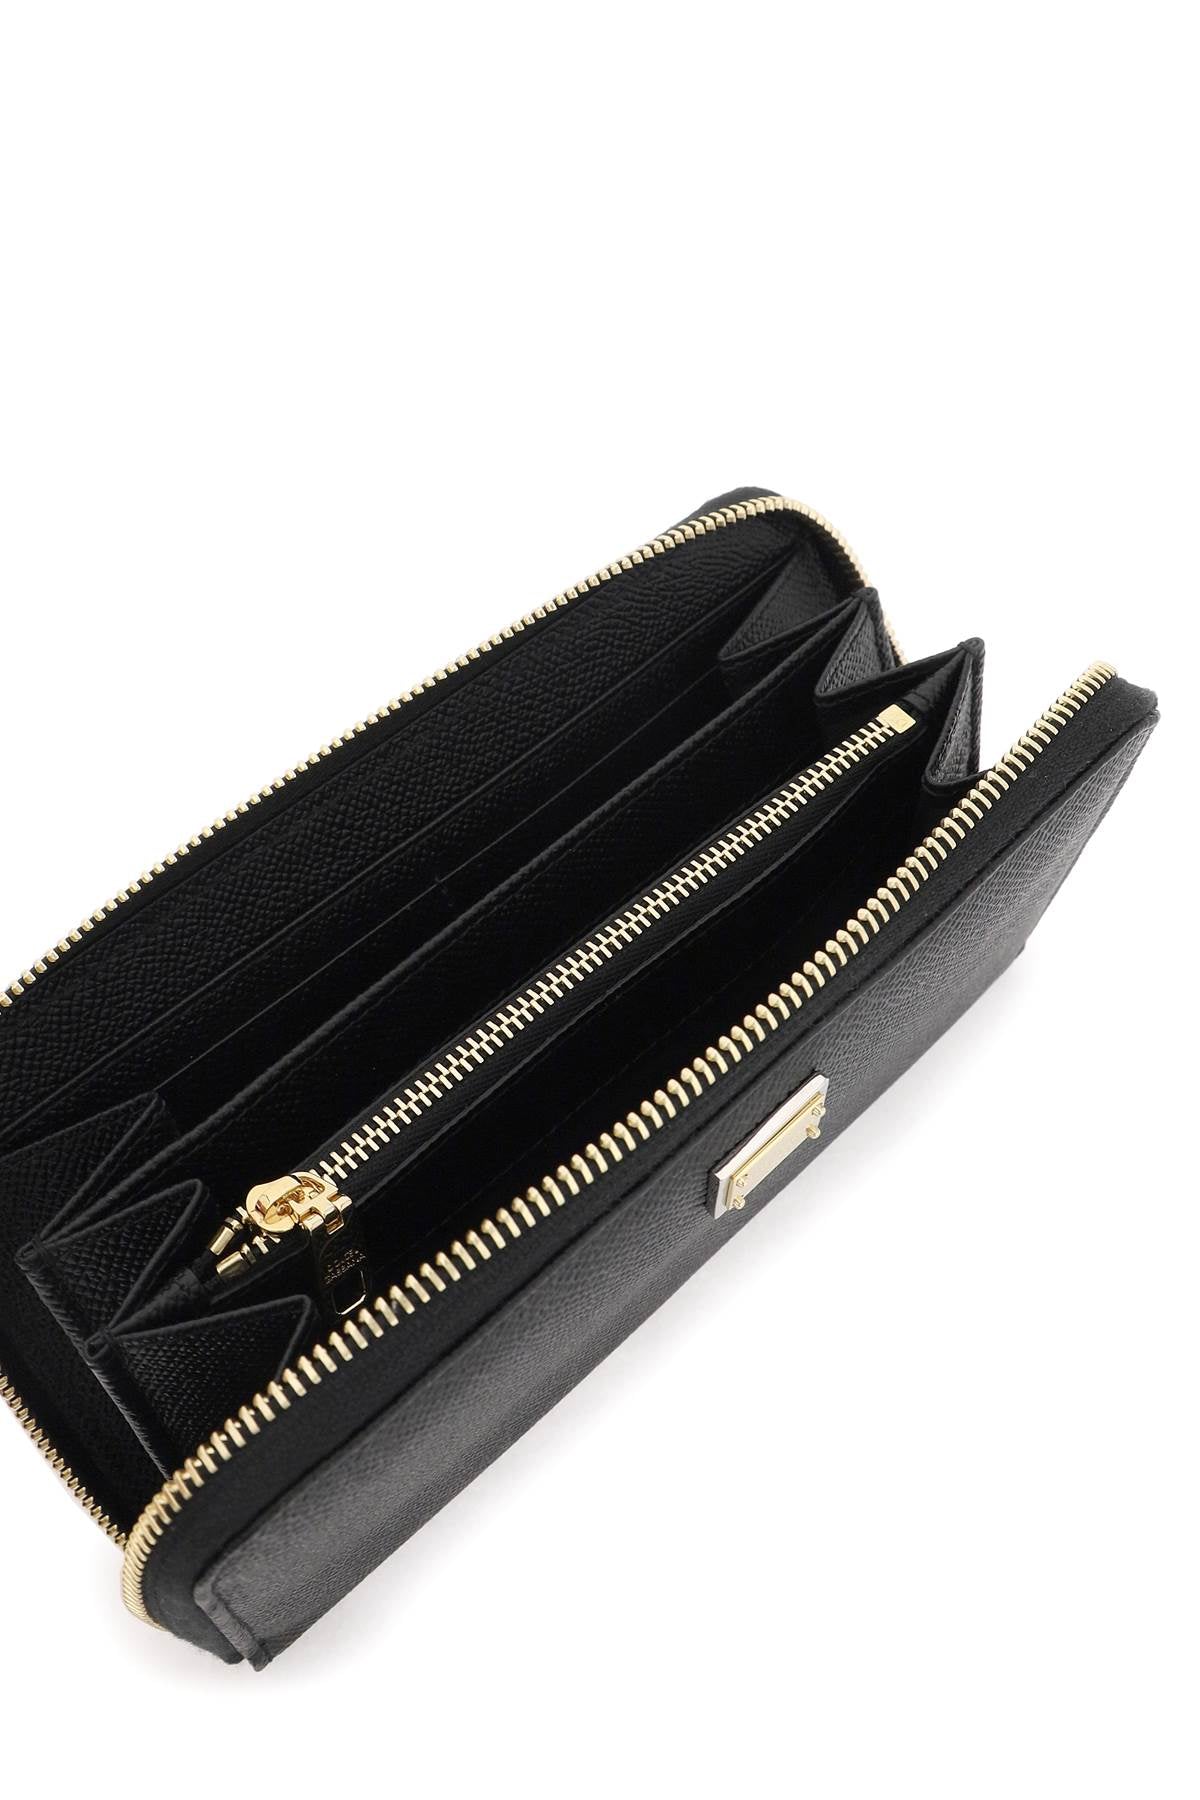 Dolce & gabbana leather zip-around wallet-1